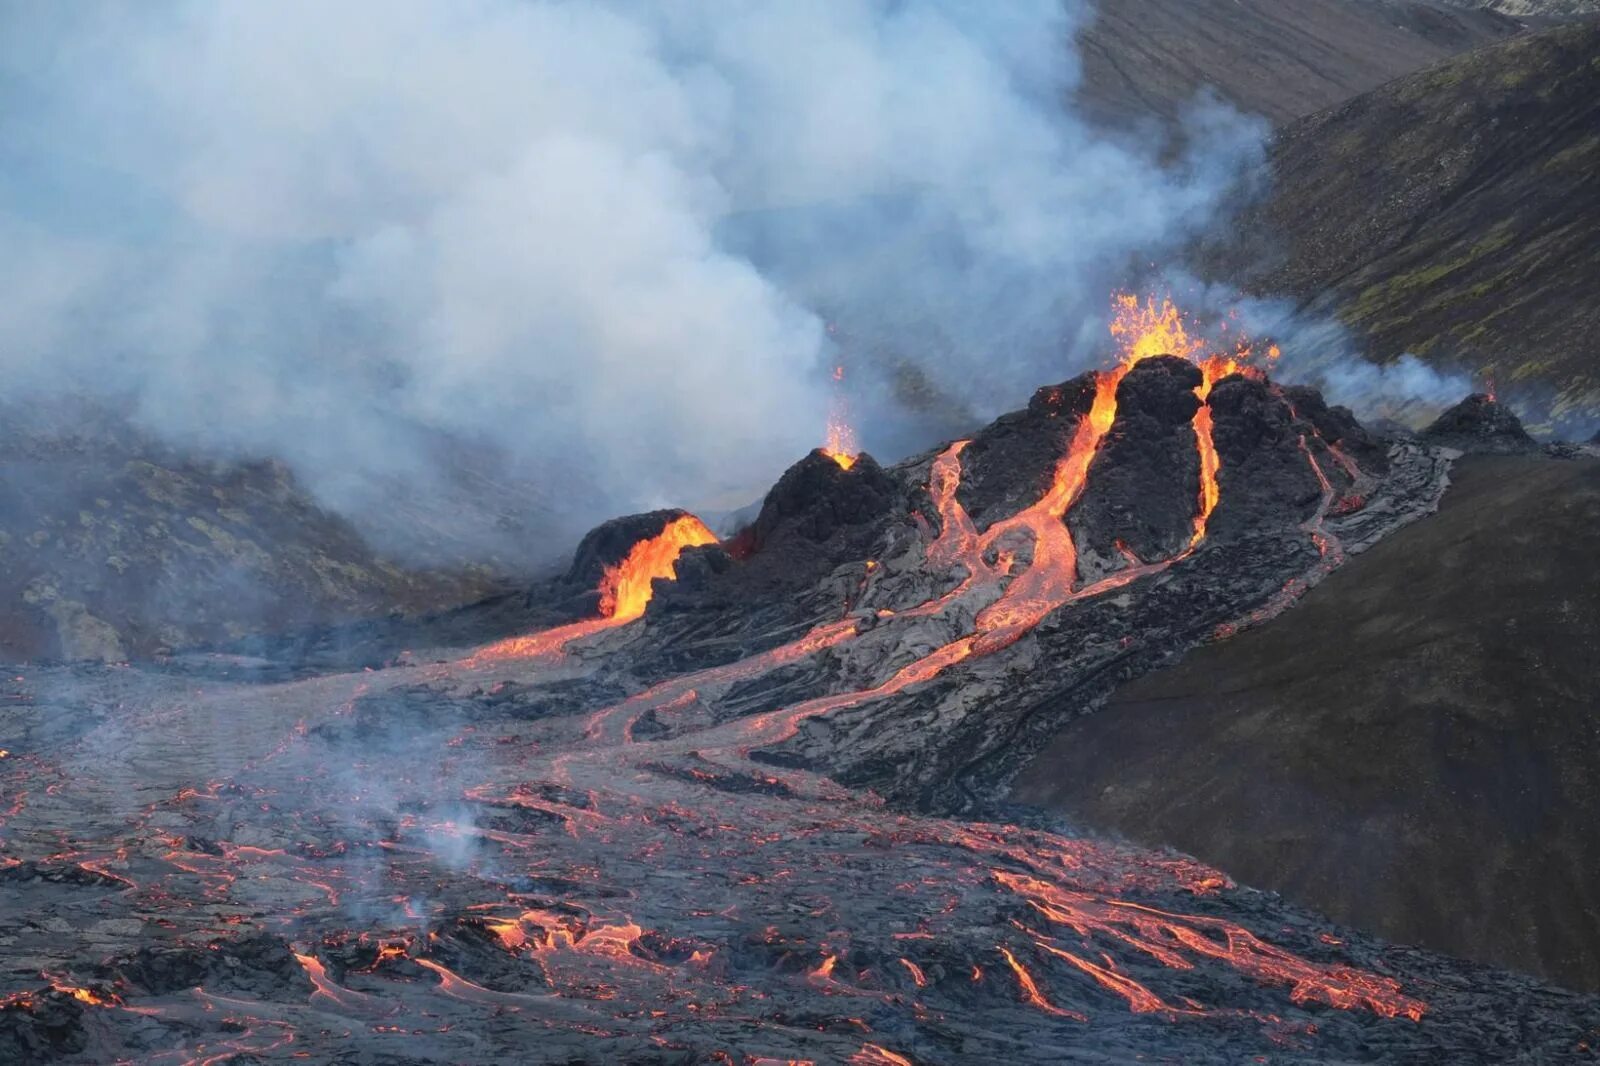 Извержение вулкана в Исландии 2021. Извержение вулкана в Исландии Эйяфьятлайокудль. Исландия вулкан Эйяфьятлайокудль извержение 2010. Эйяфьядлайёкюдль вулкан в Исландии.